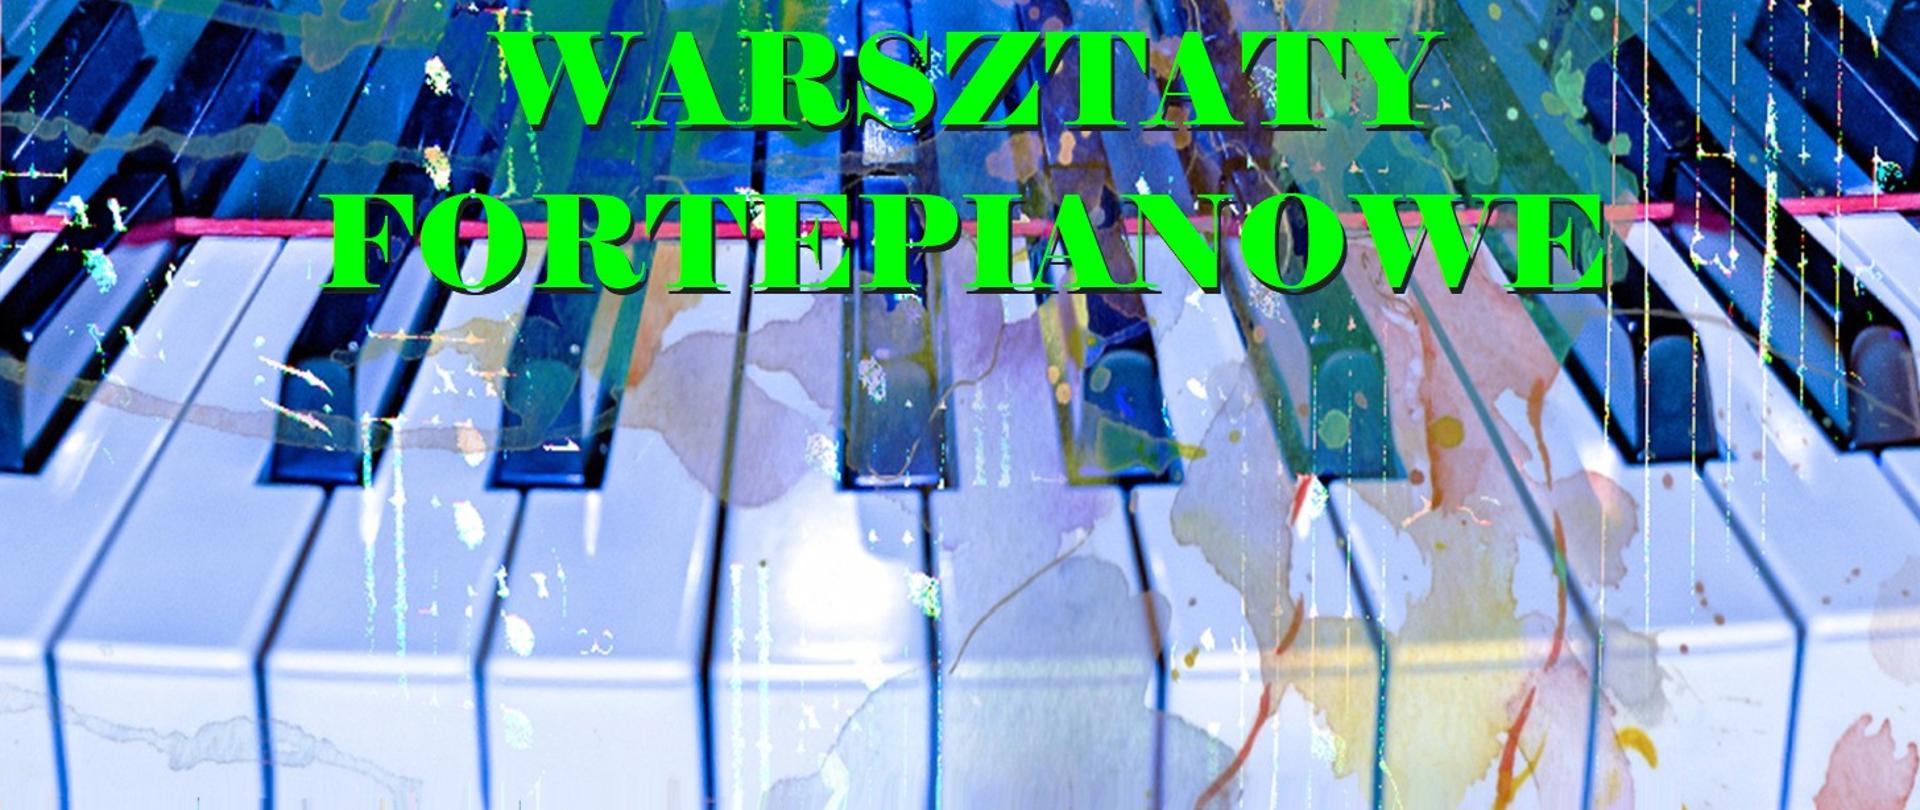 zdjęcie przedstawia duży zielony napis warsztaty fortepianowe umieszczony centralnie u góry na tle złożonego z kilkunastu klawiszy fragmentu klawiatury fortepianowej